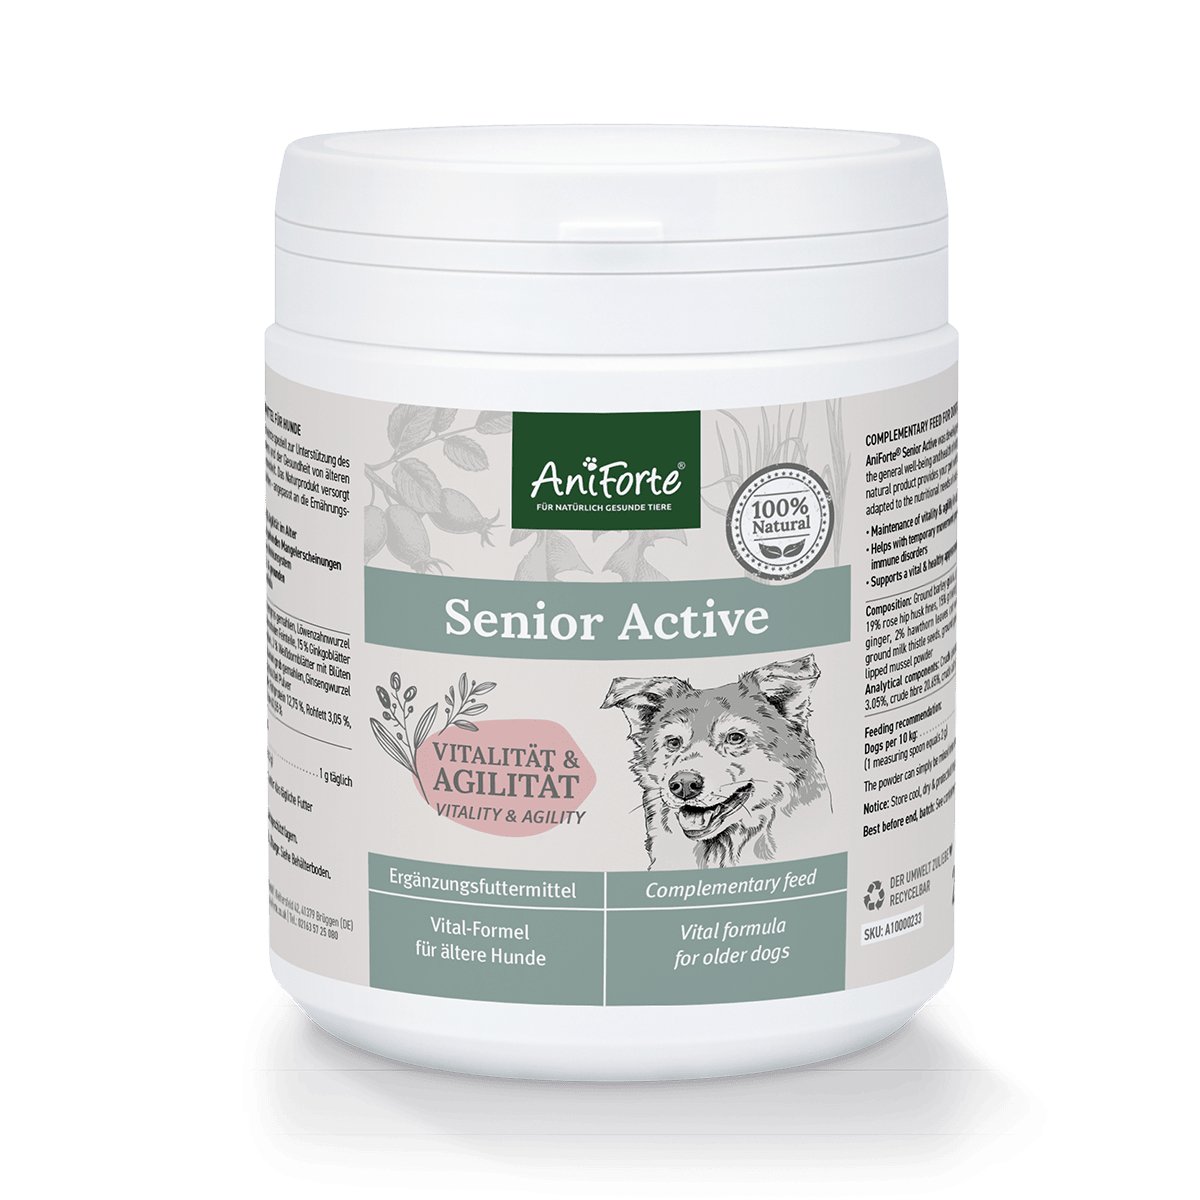 Senior Active Supplement 250g -  Vitality & Agility for Older Dogs - AniForte UK